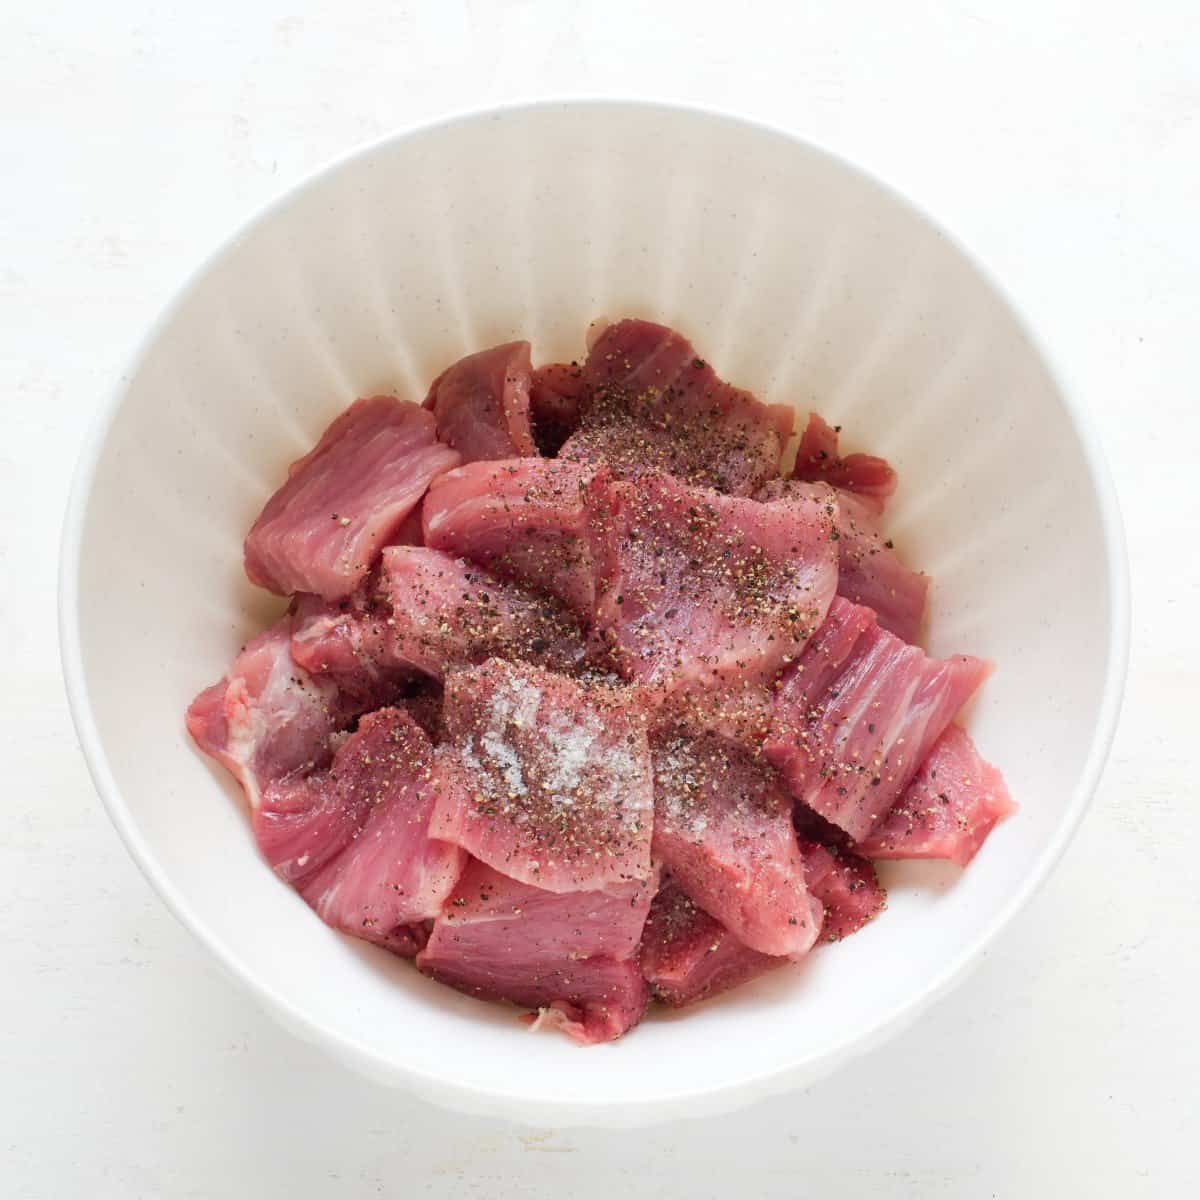 Schweinefilet in Würfel geschnitten, mit Pfeffer und Salz abgeschmeckt.